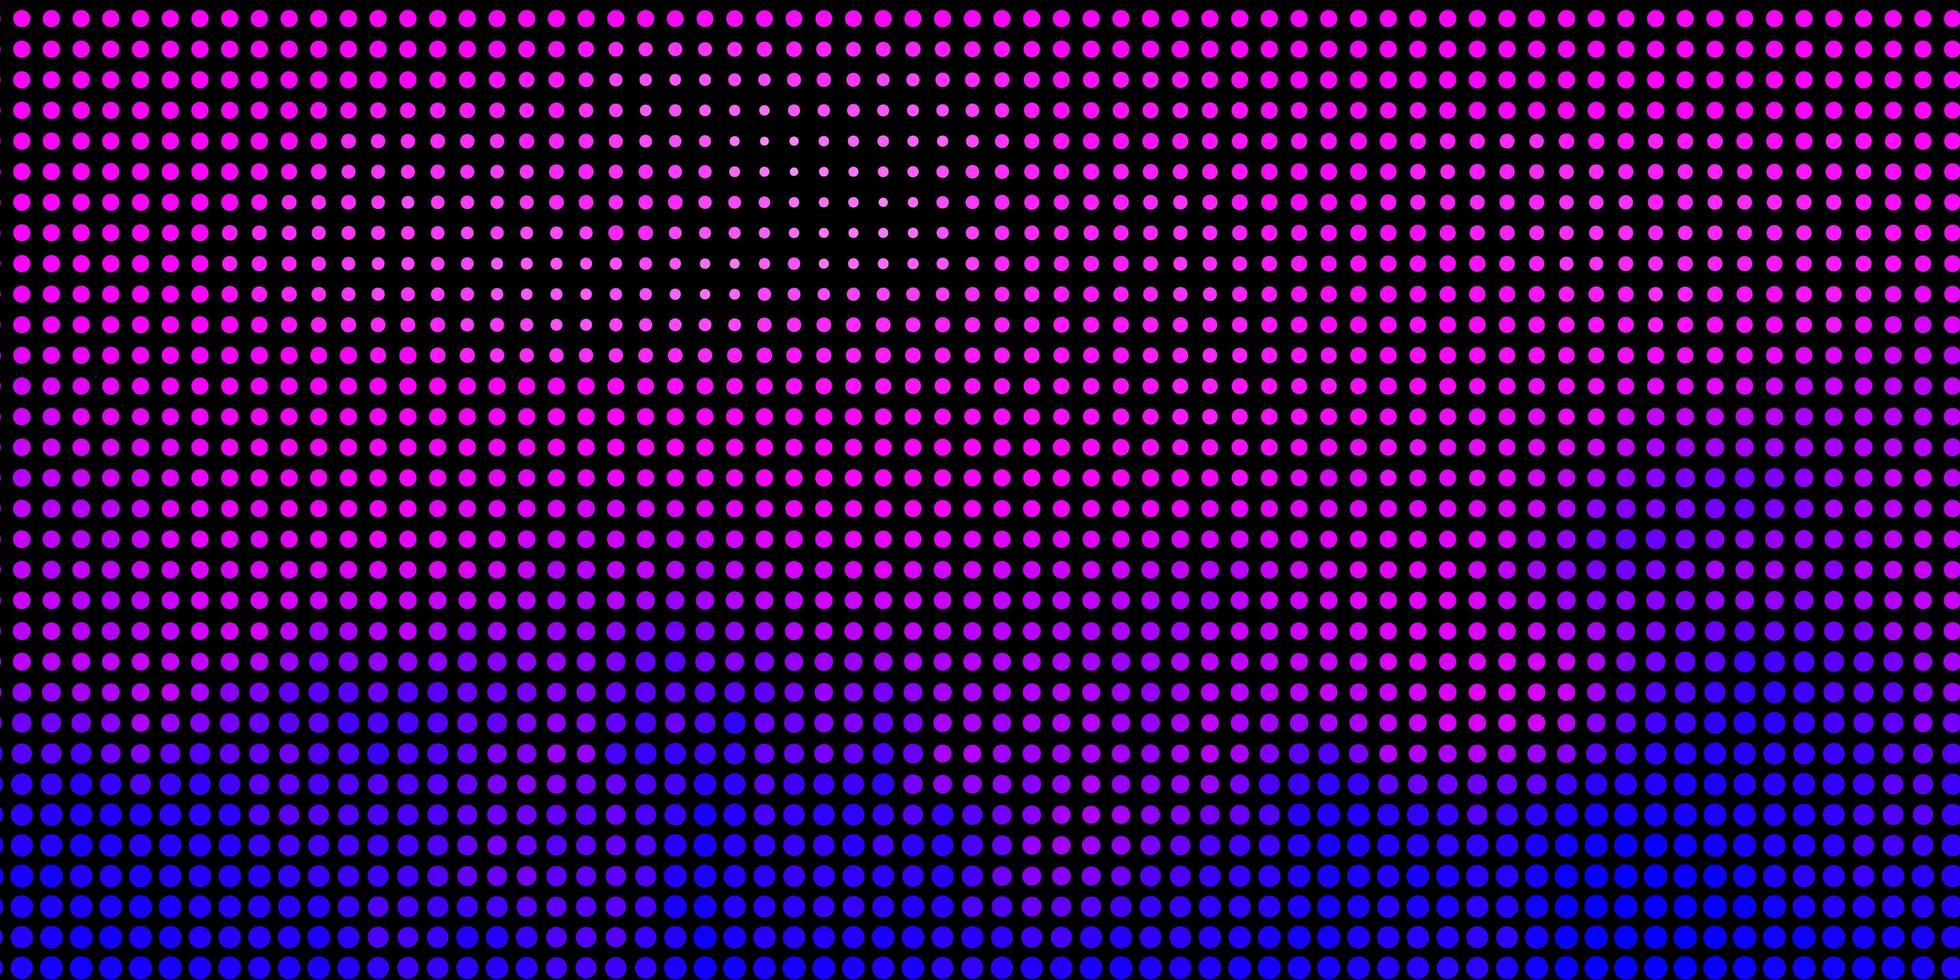 patrón de vector azul rosa claro con esferas, discos de colores abstractos en un patrón de fondo degradado simple para sitios web